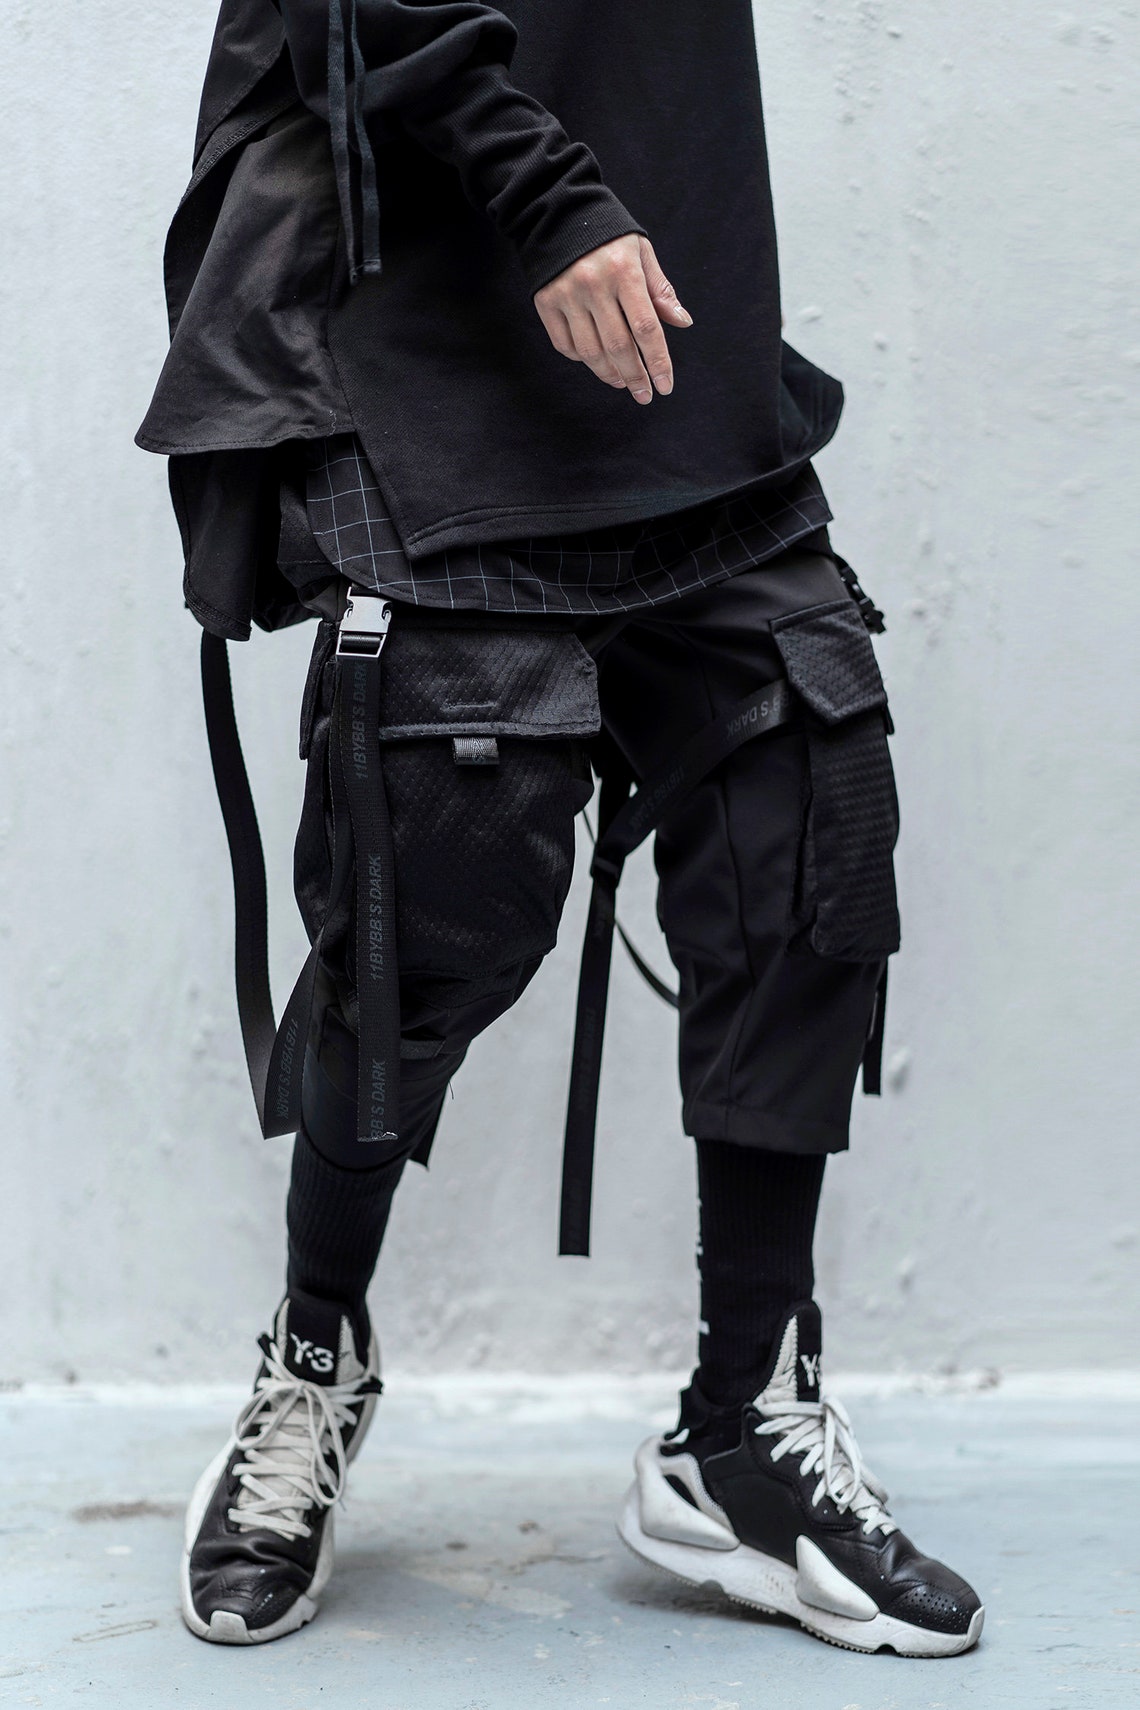 MFCT Japanese Streetwear Black Techwear Pants Men Cyberpunk - Etsy UK